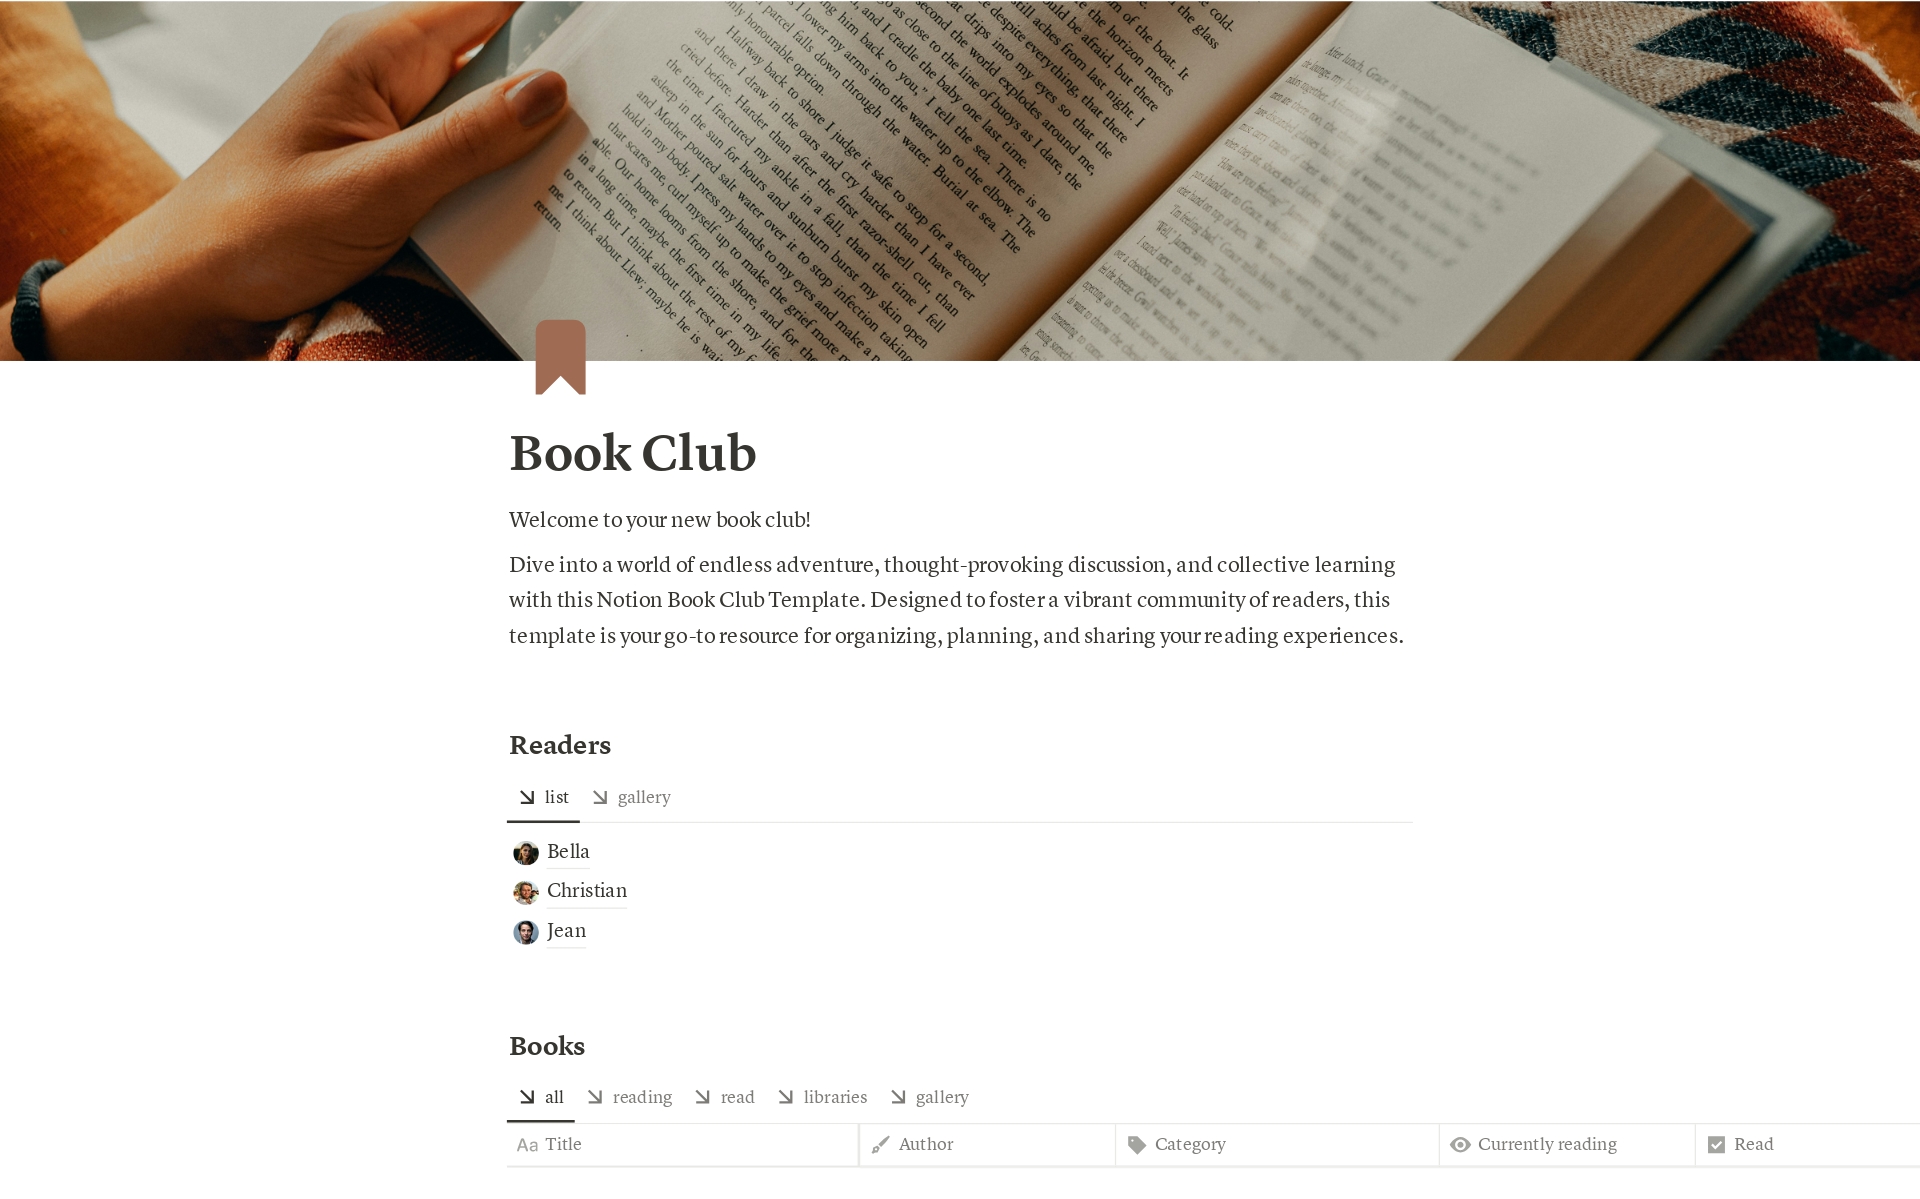 Vista previa de una plantilla para Book Club